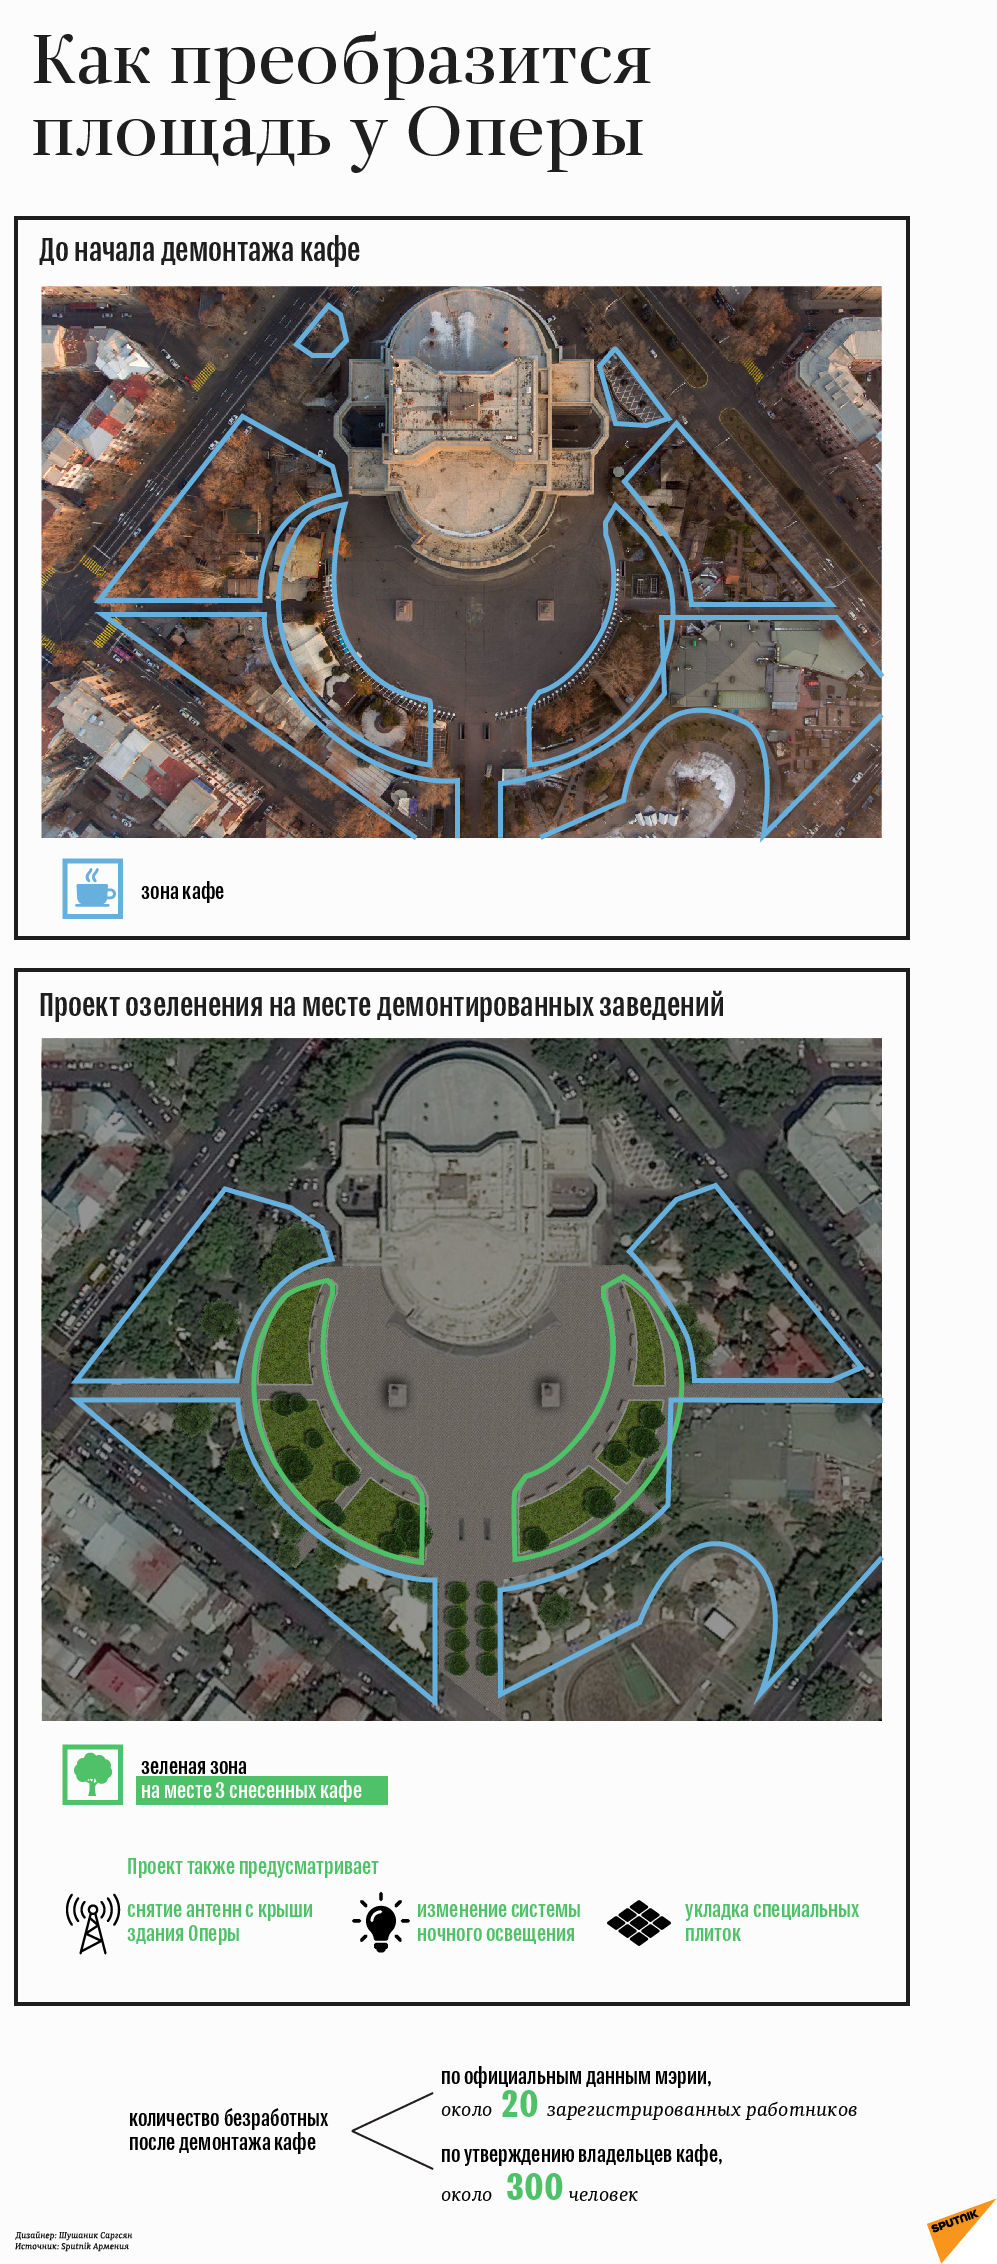 Как преобразится площадь у Оперы - Sputnik Армения